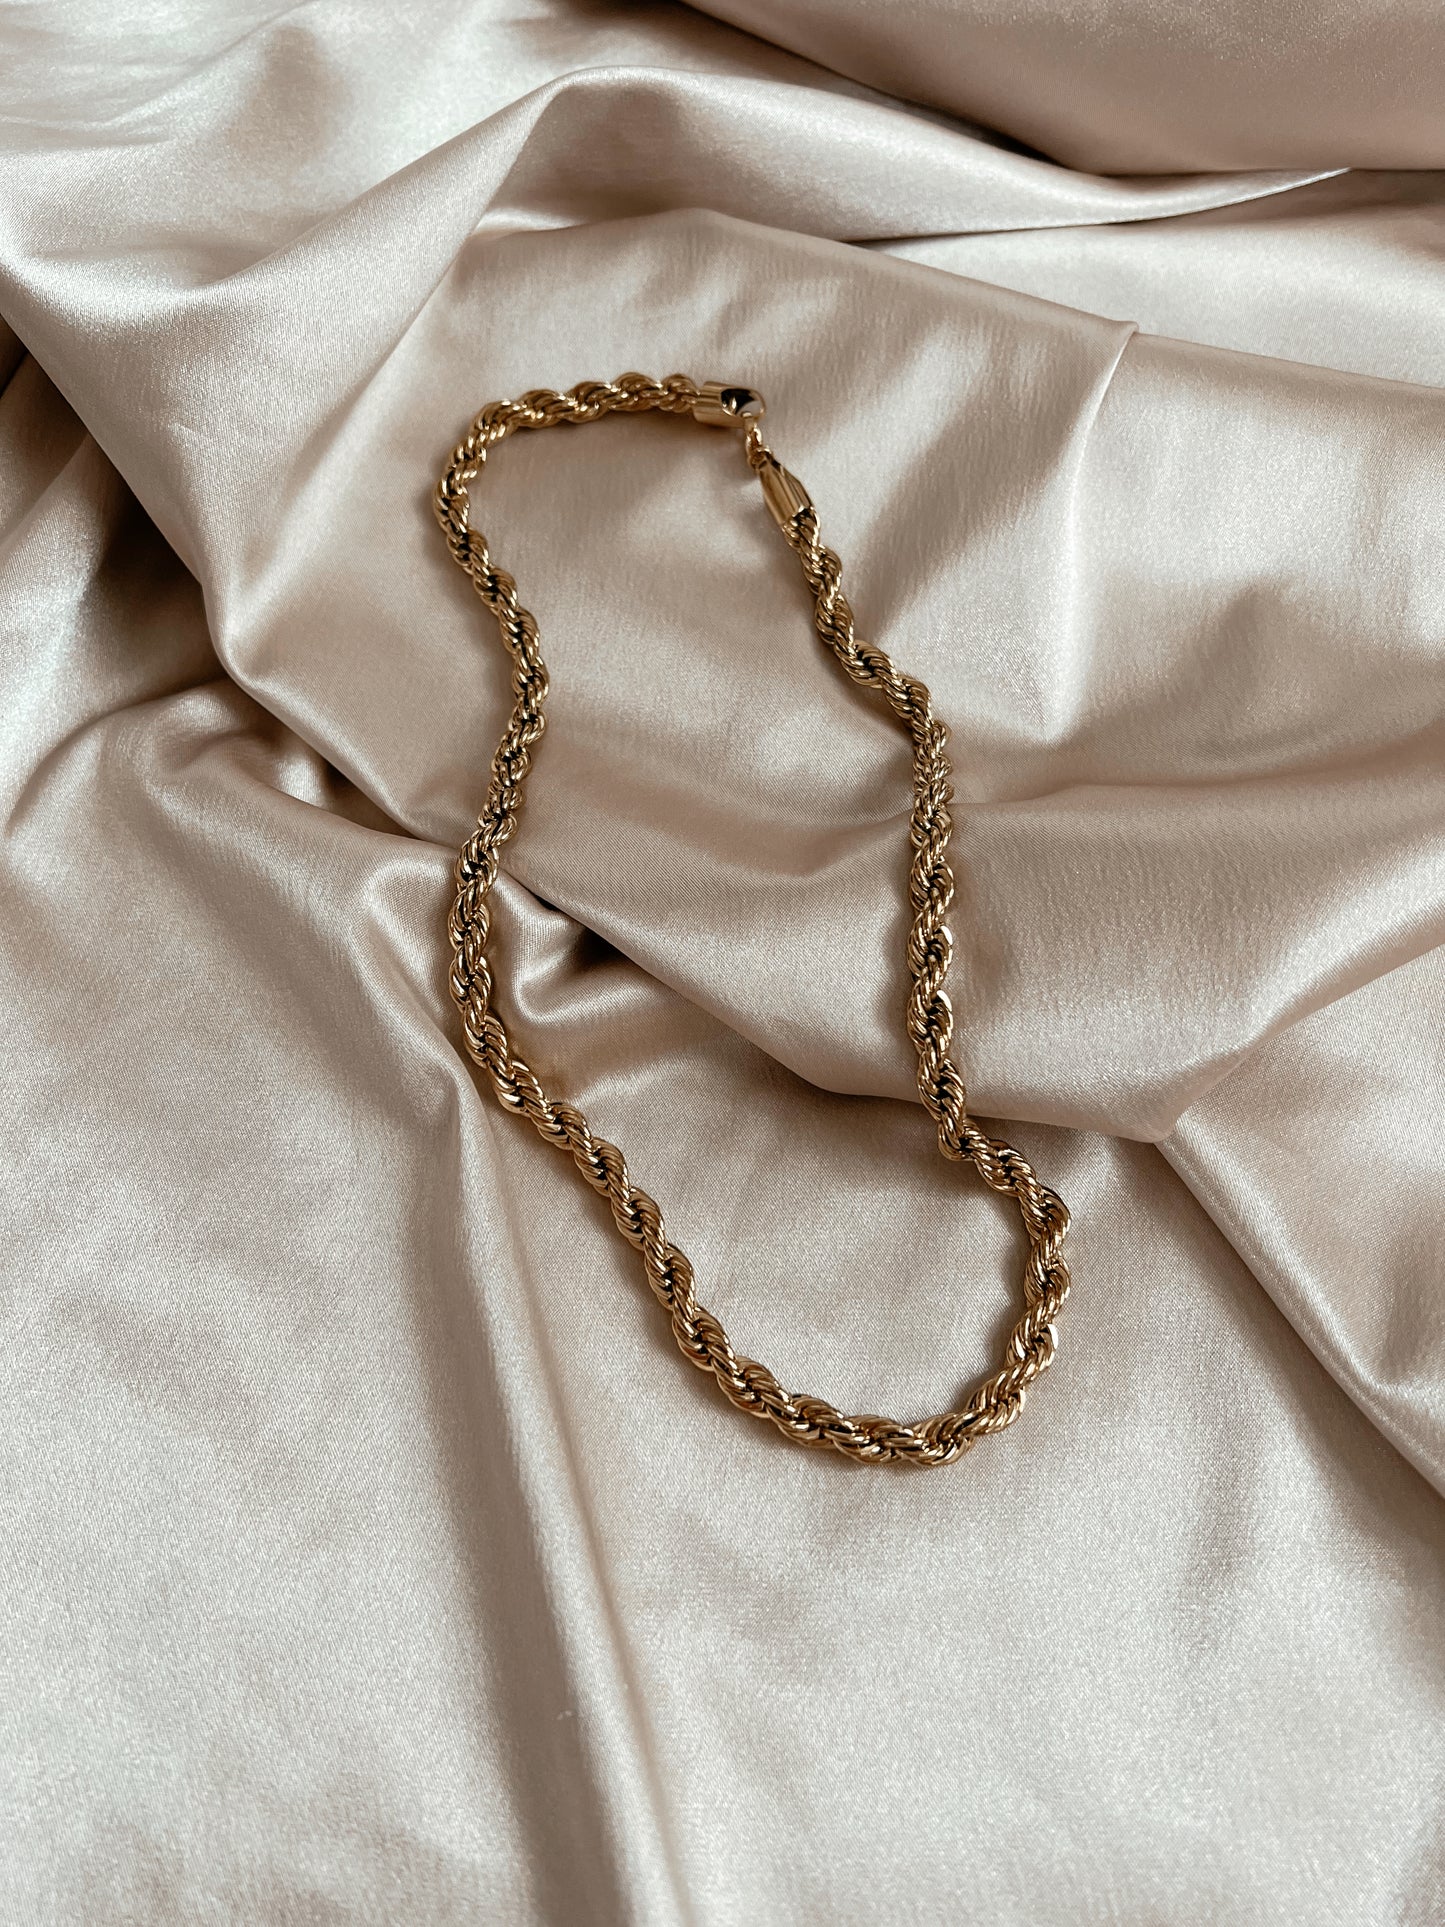 Lasso Necklace Chain